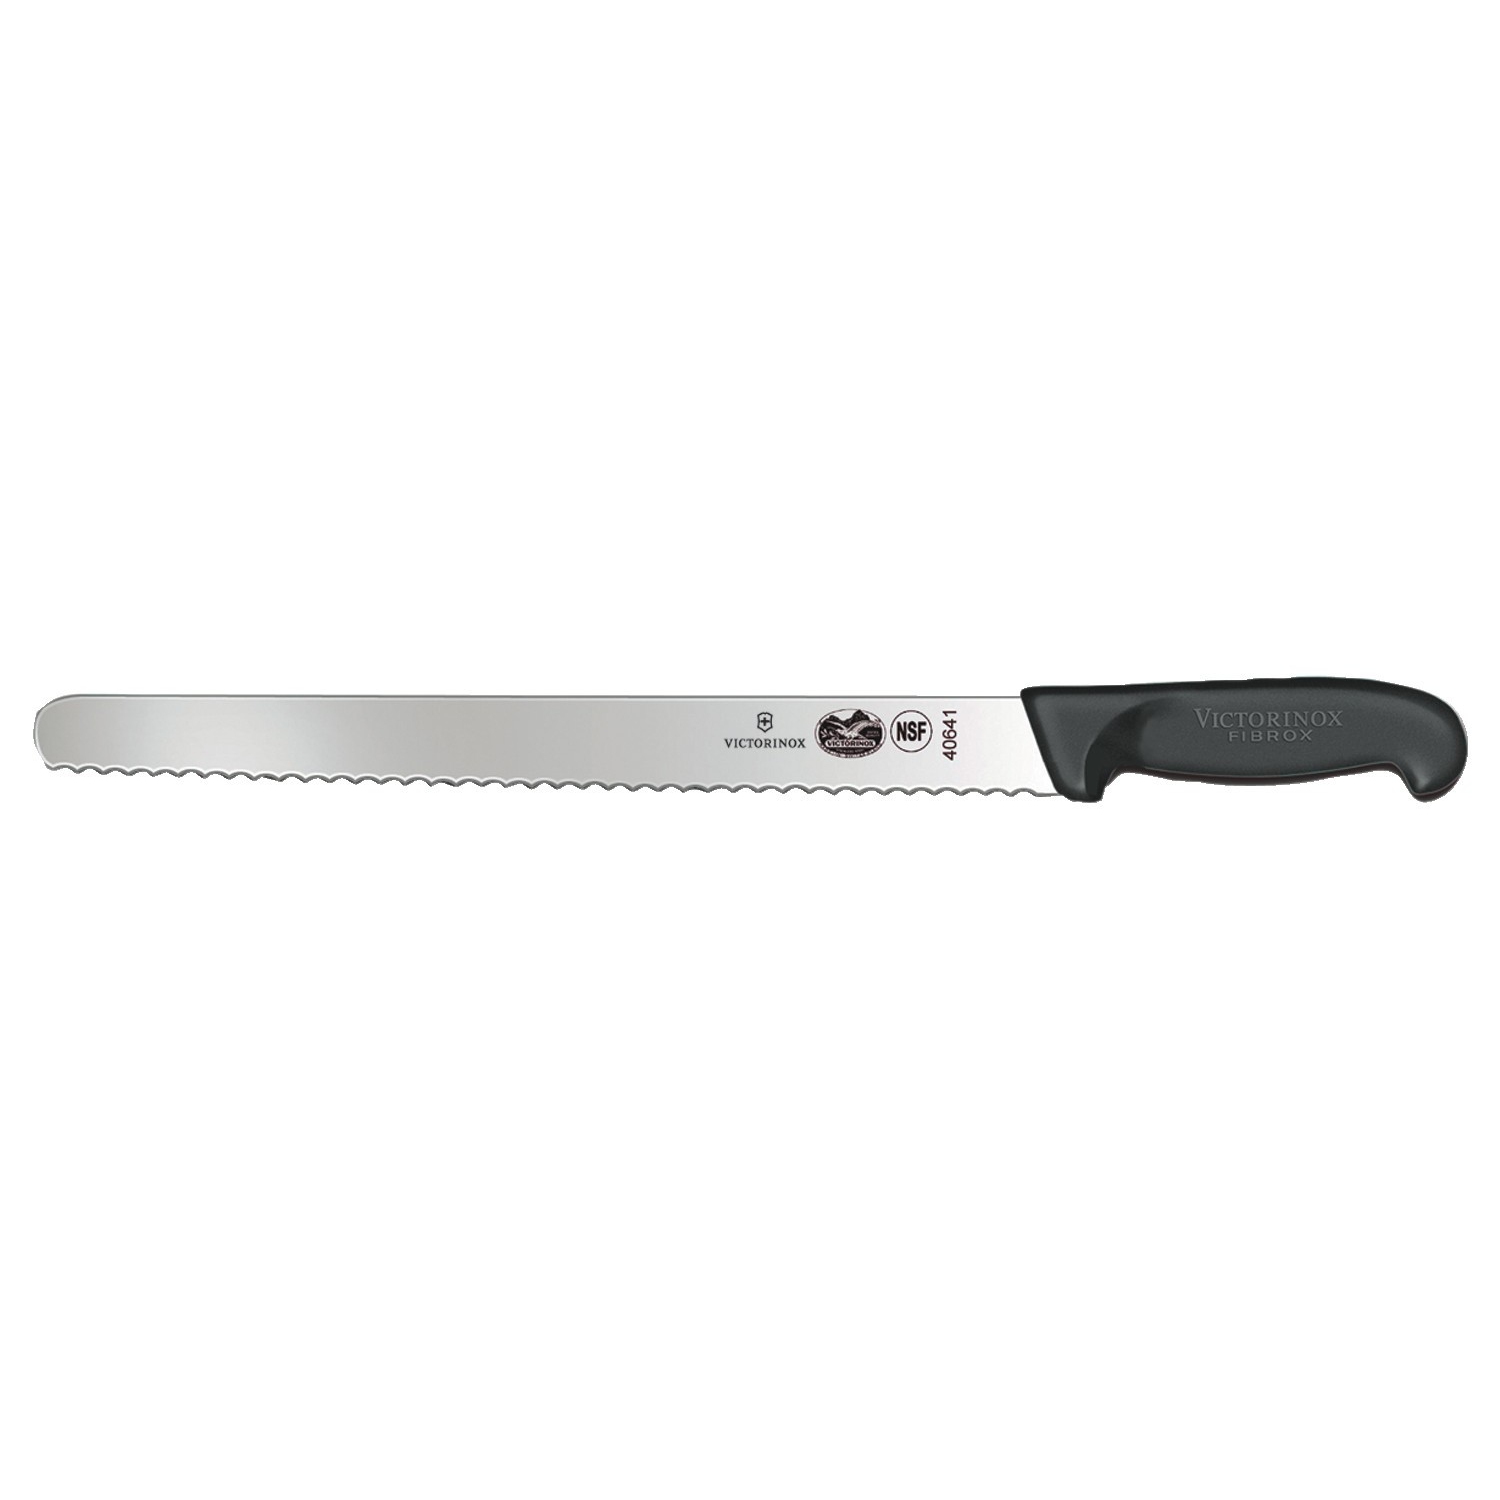 Fibrox 12'' Serrated Slicing Knife - Victorinox (40641)